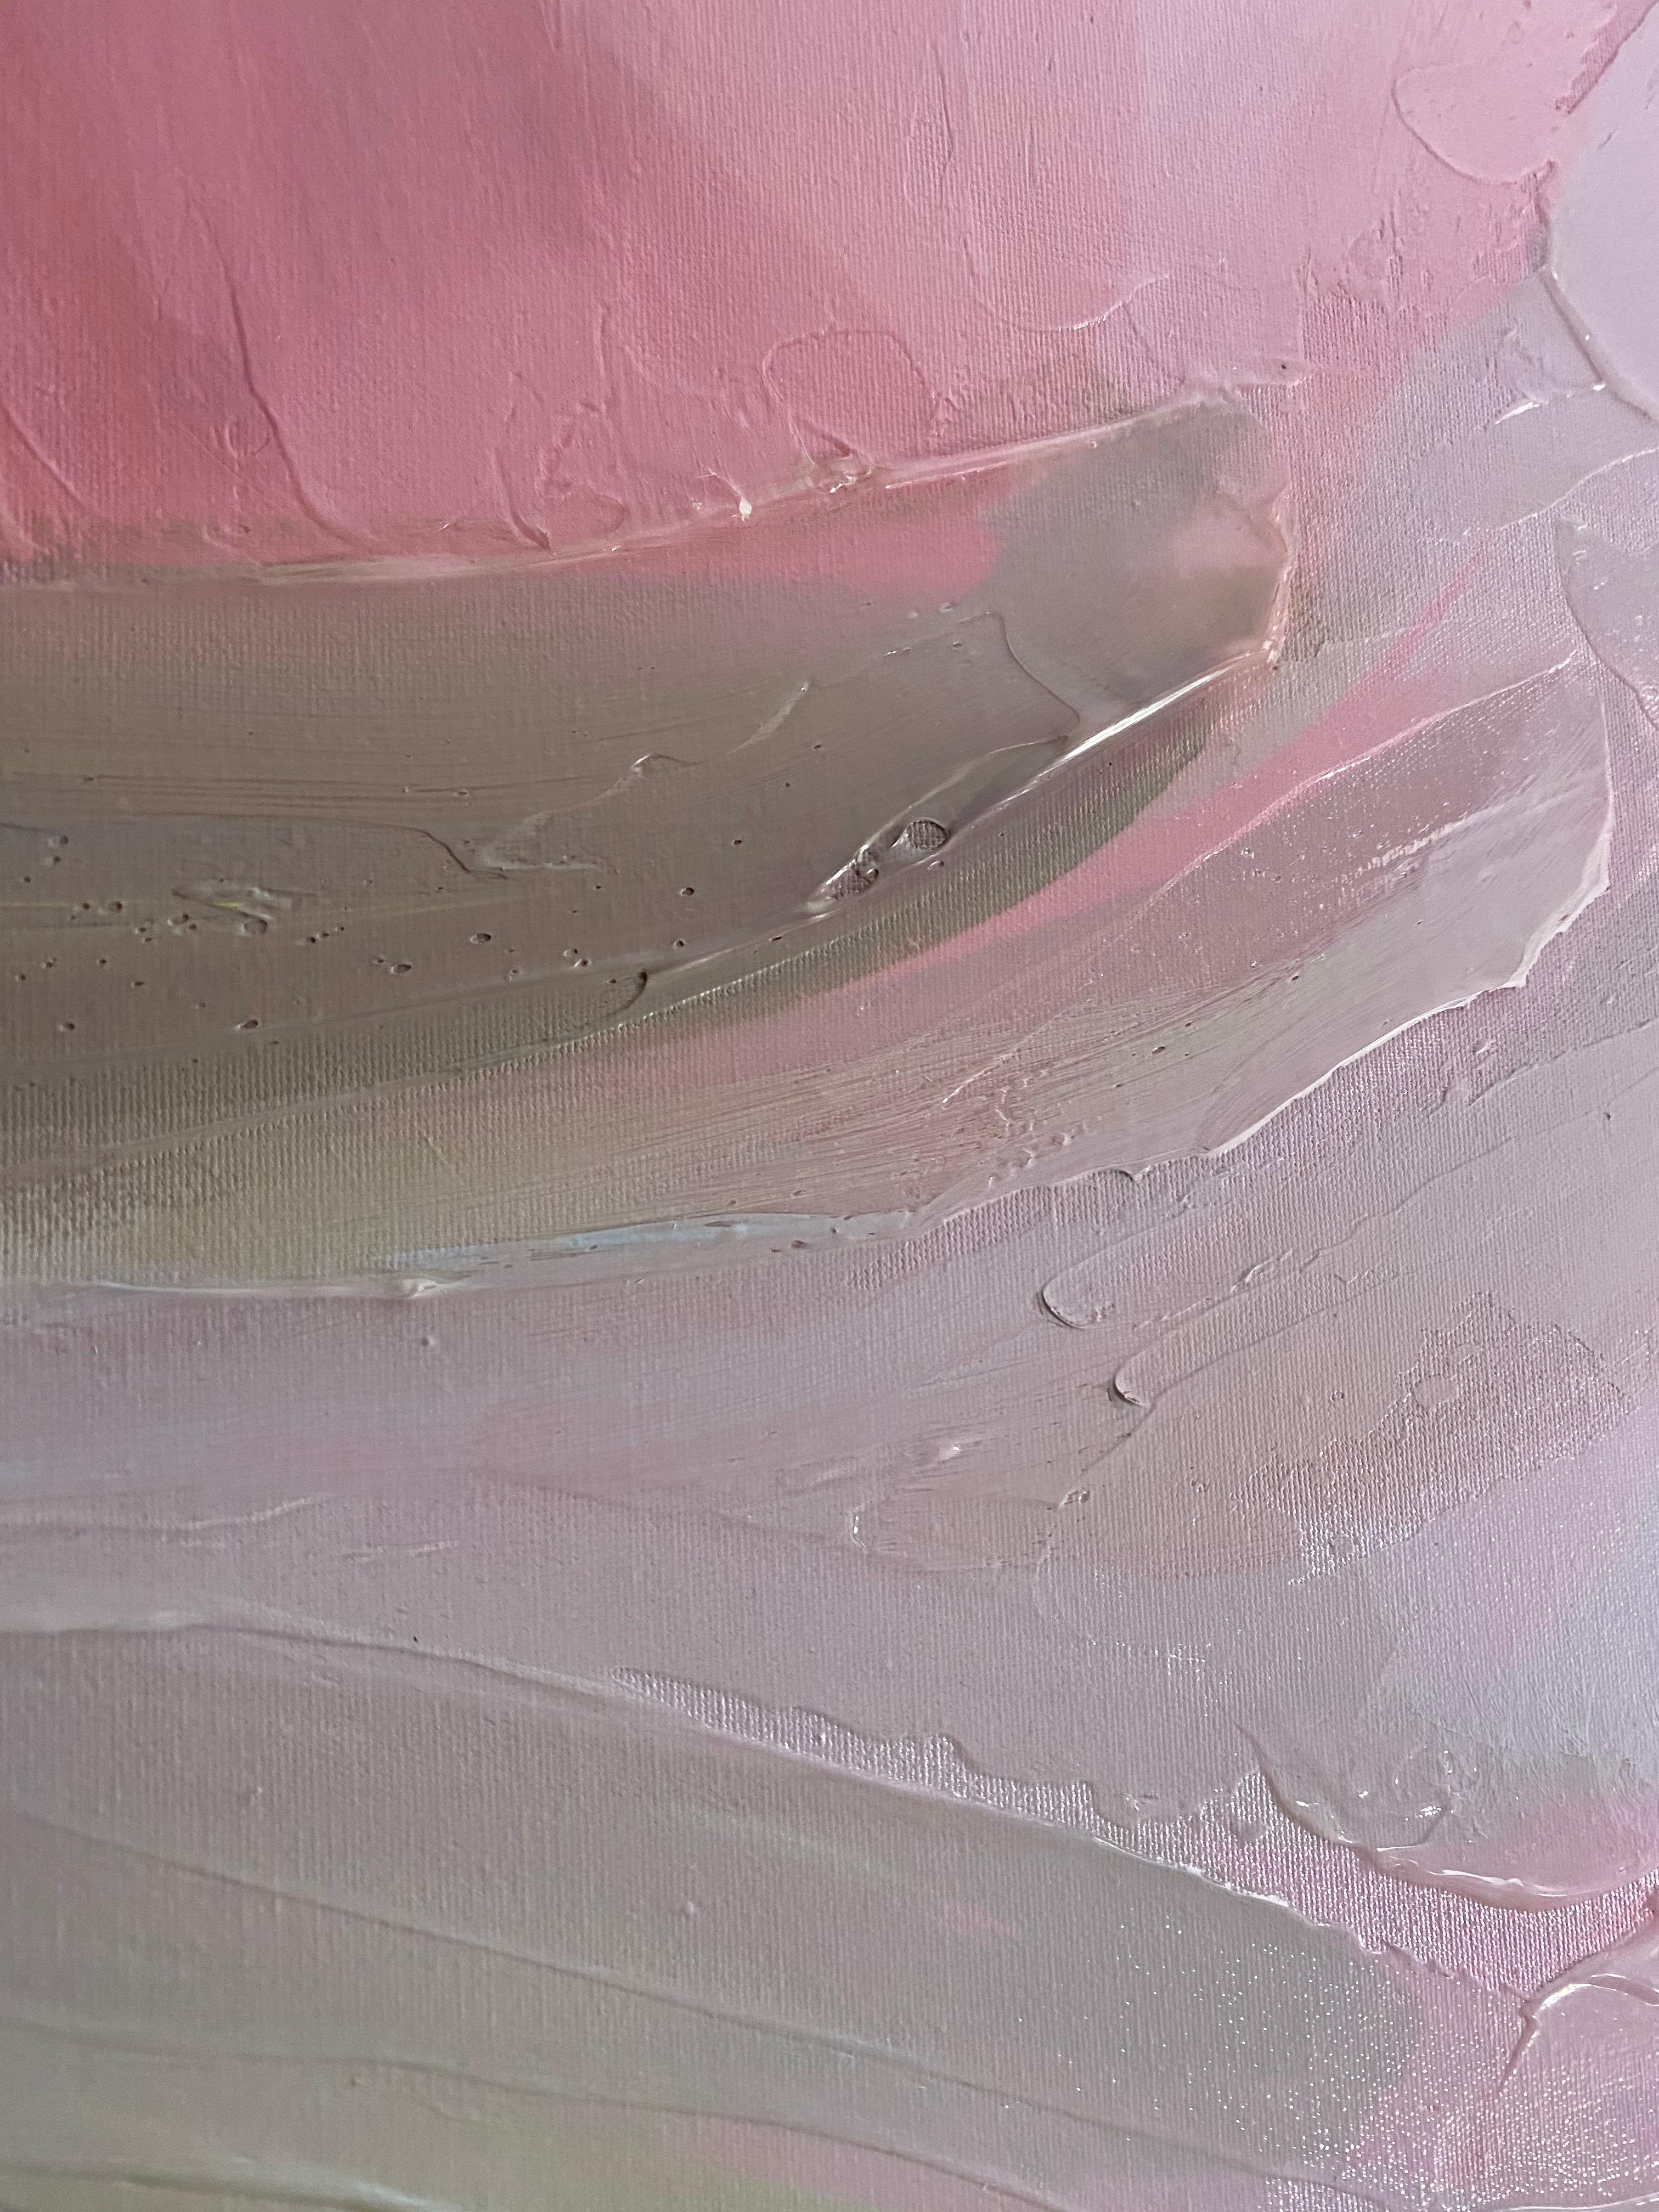 Die unerklärliche Bewegung Malerei Kunst Hand texturiert Giclee auf Leinwand 40Hx 60W